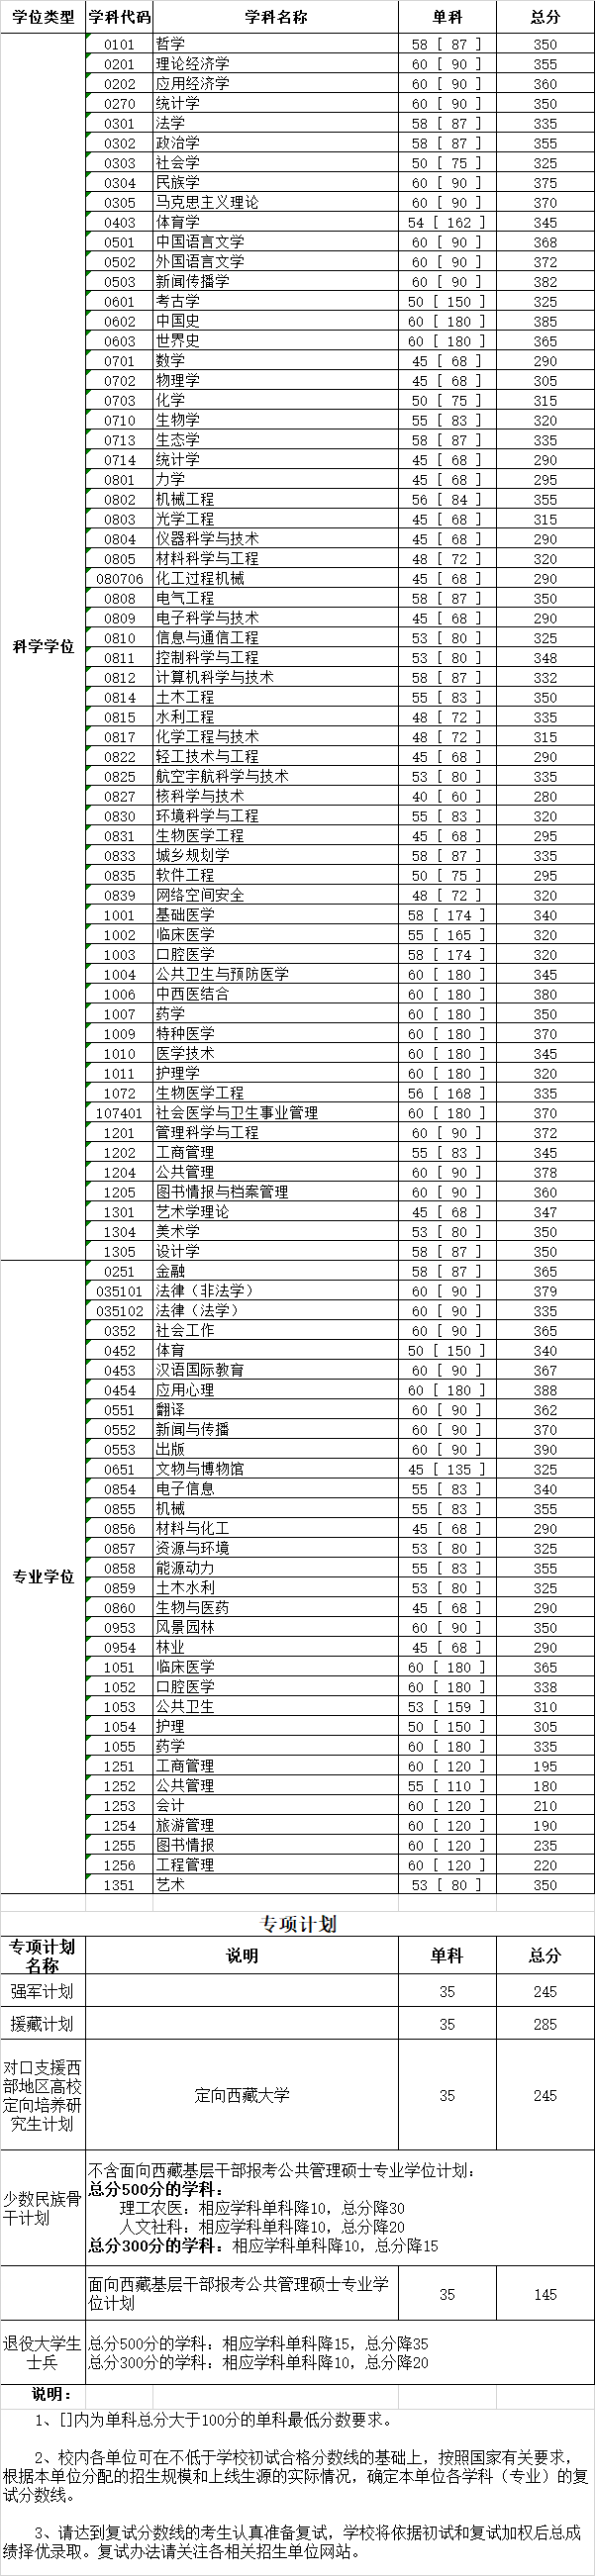 四川大学2020考研复试分数线已公布-查字典新闻网1